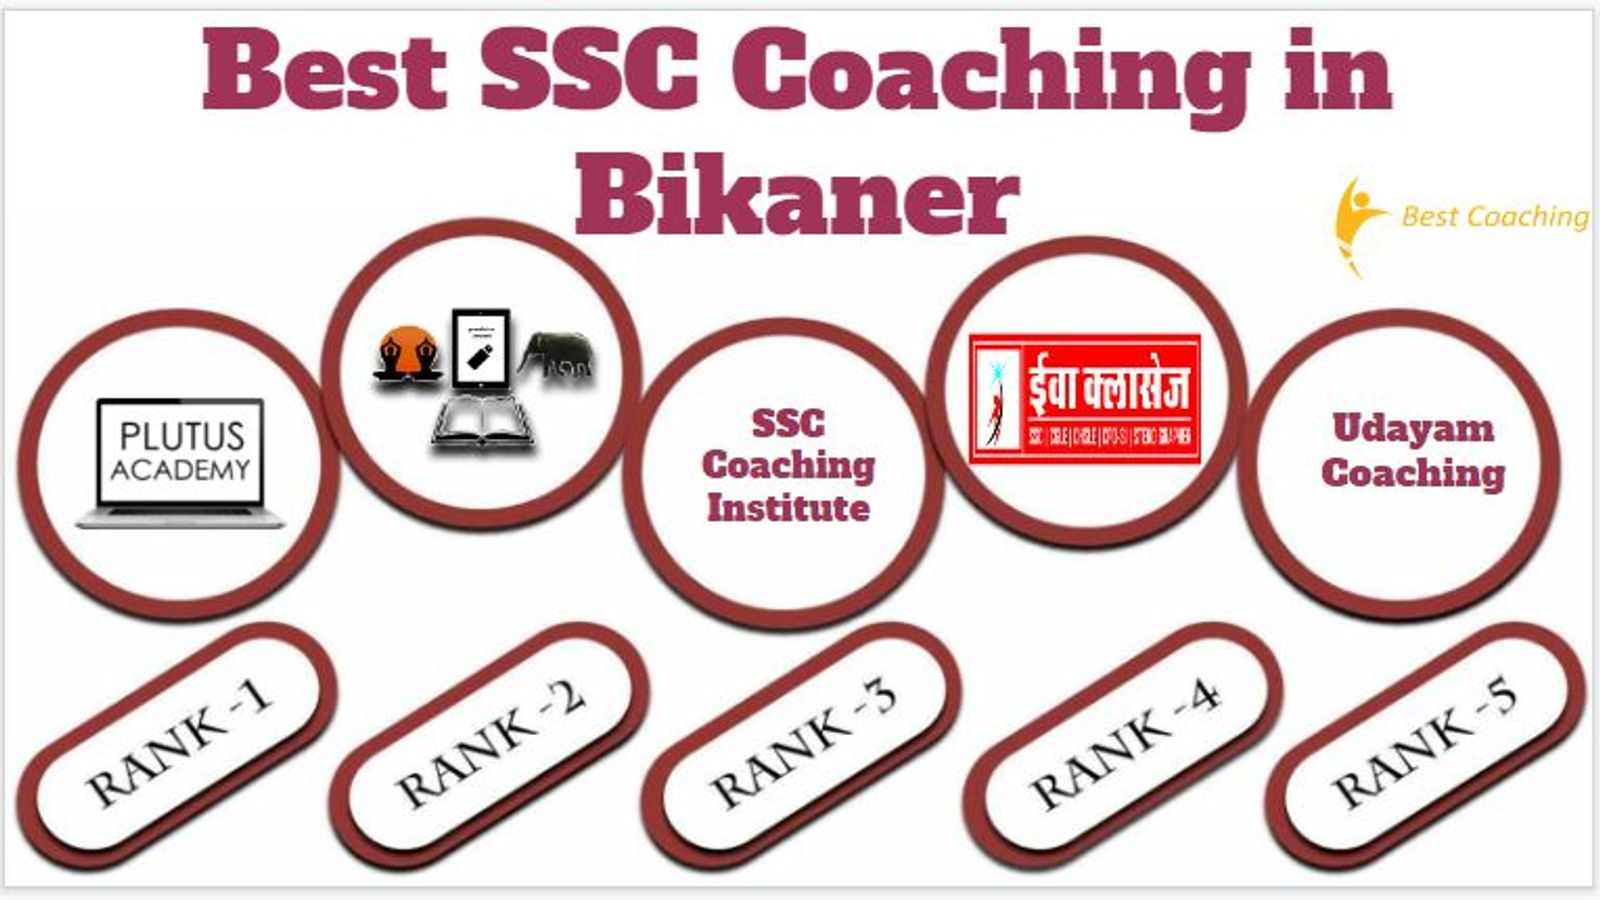 Best SSC Coaching in Bikaner